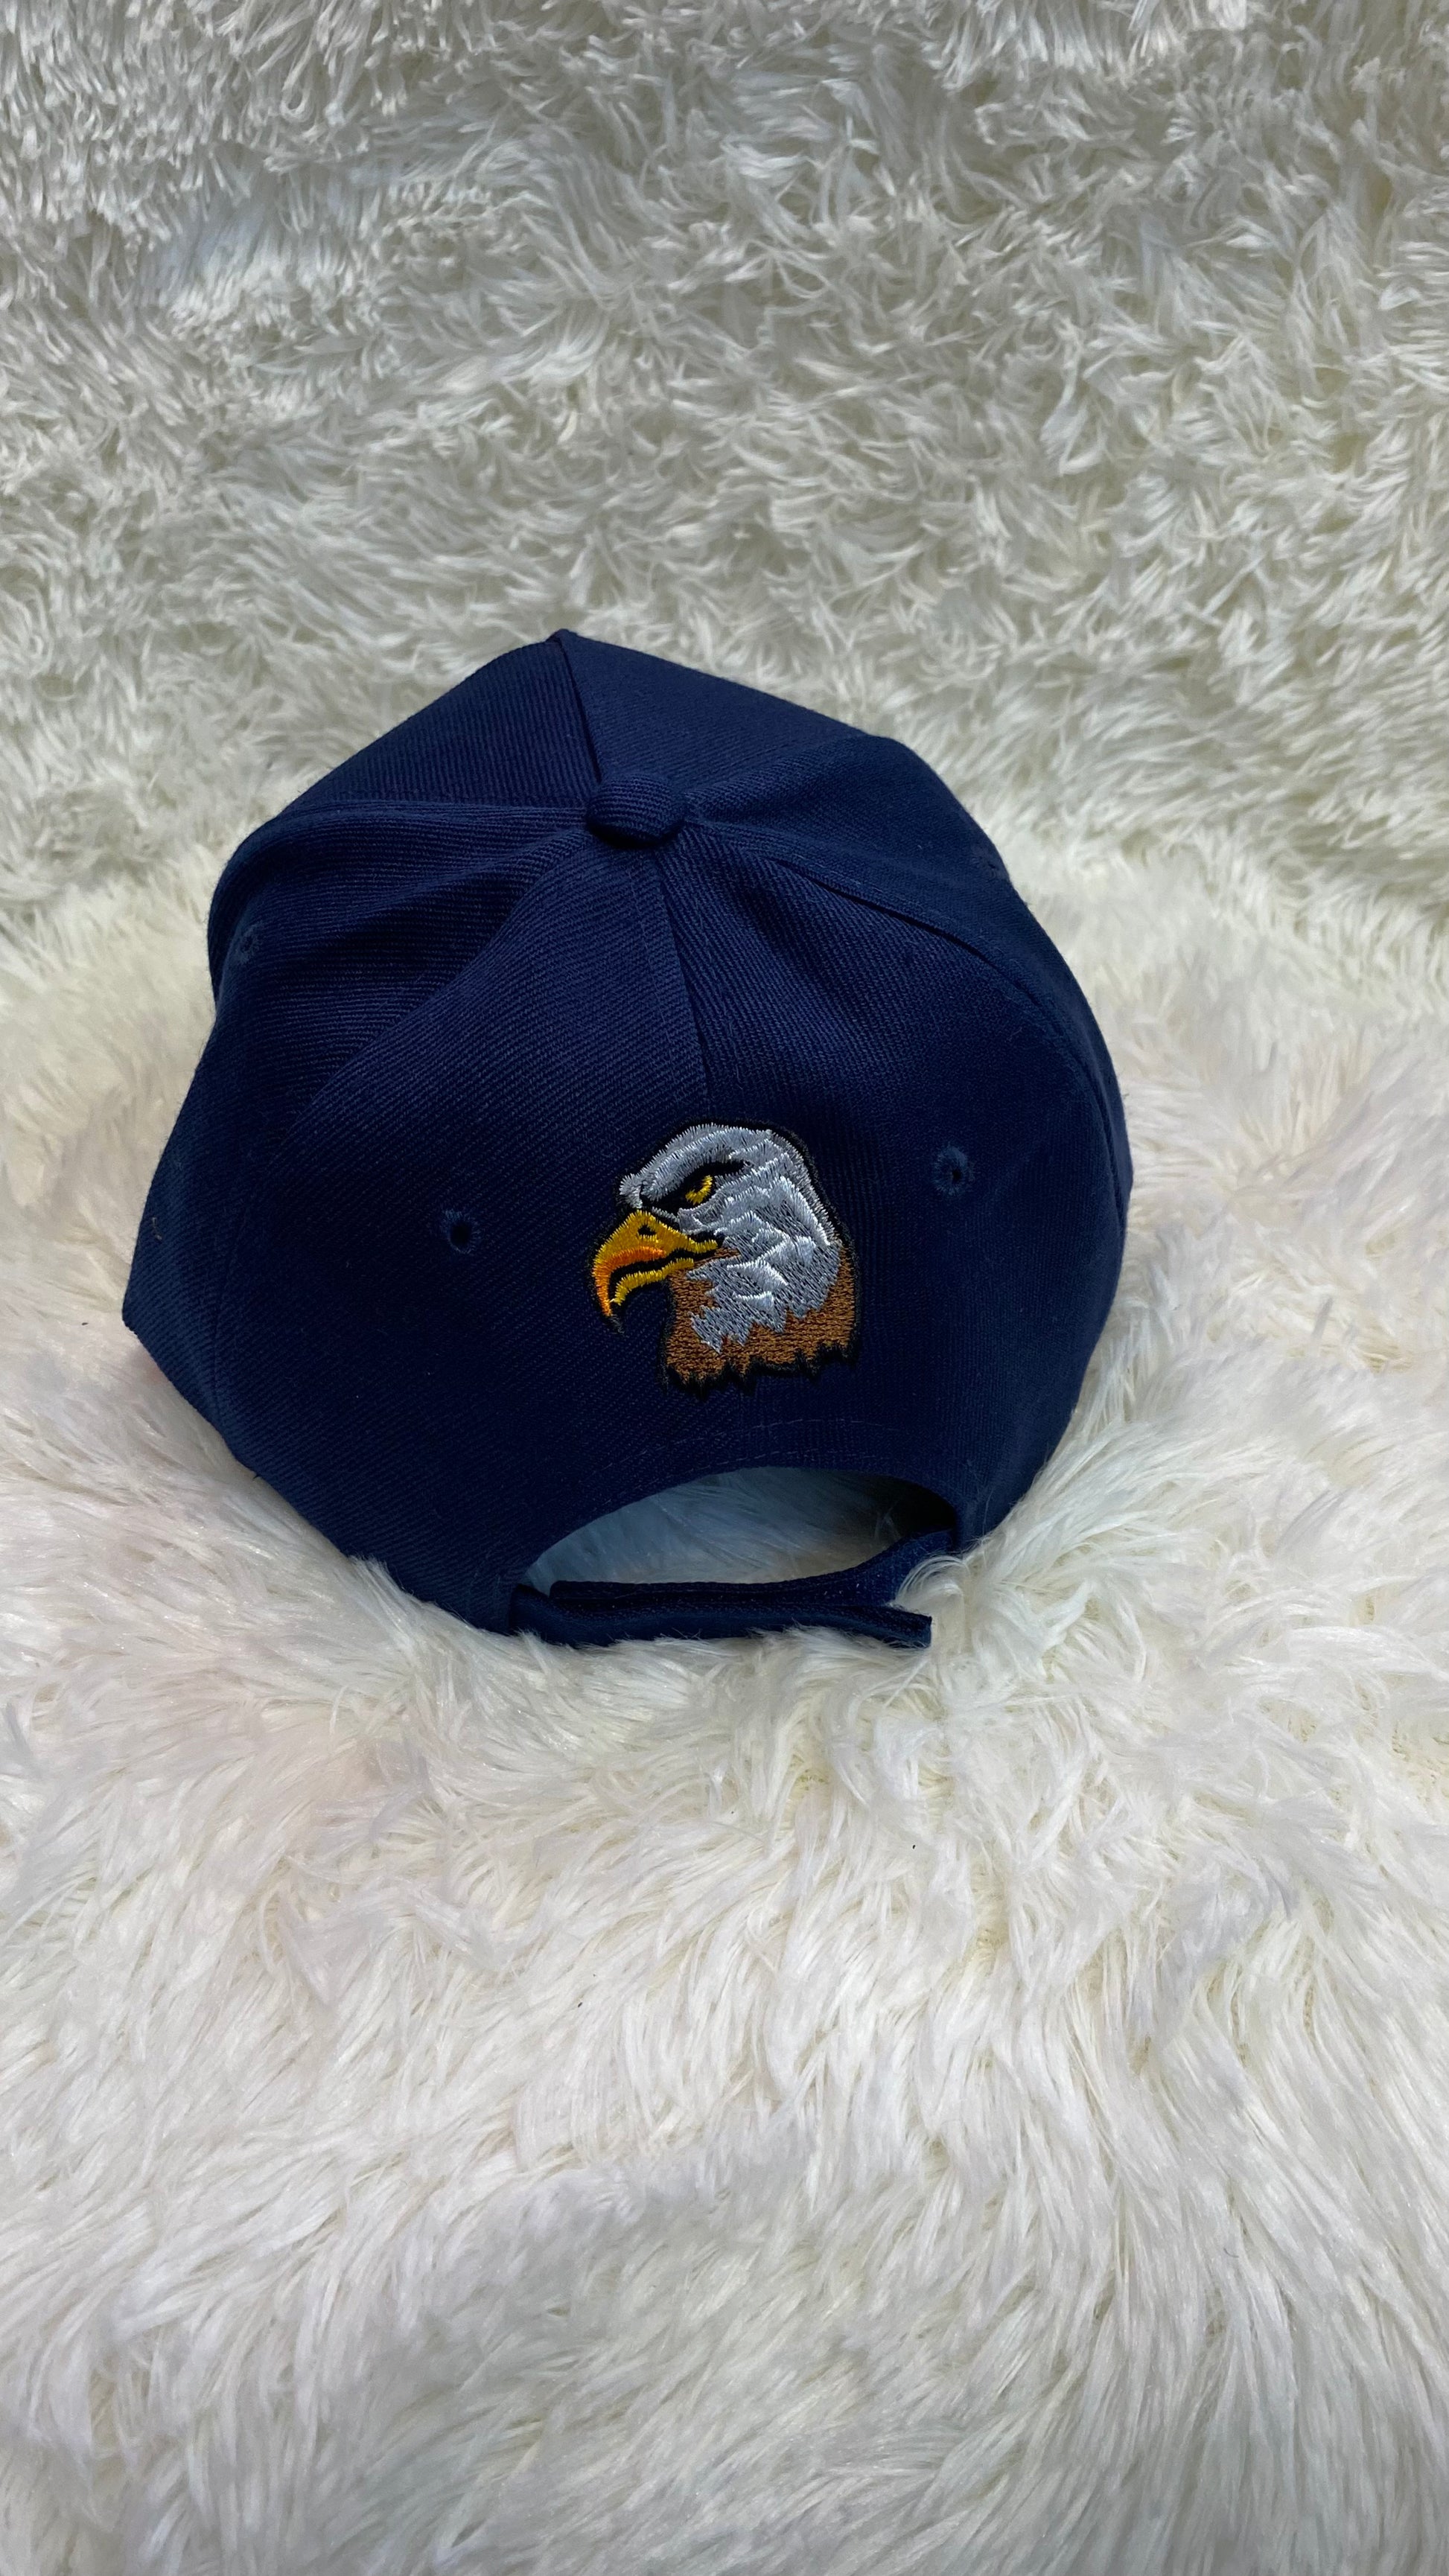 Blue US Navy Hat - Crazy Kat Design Co